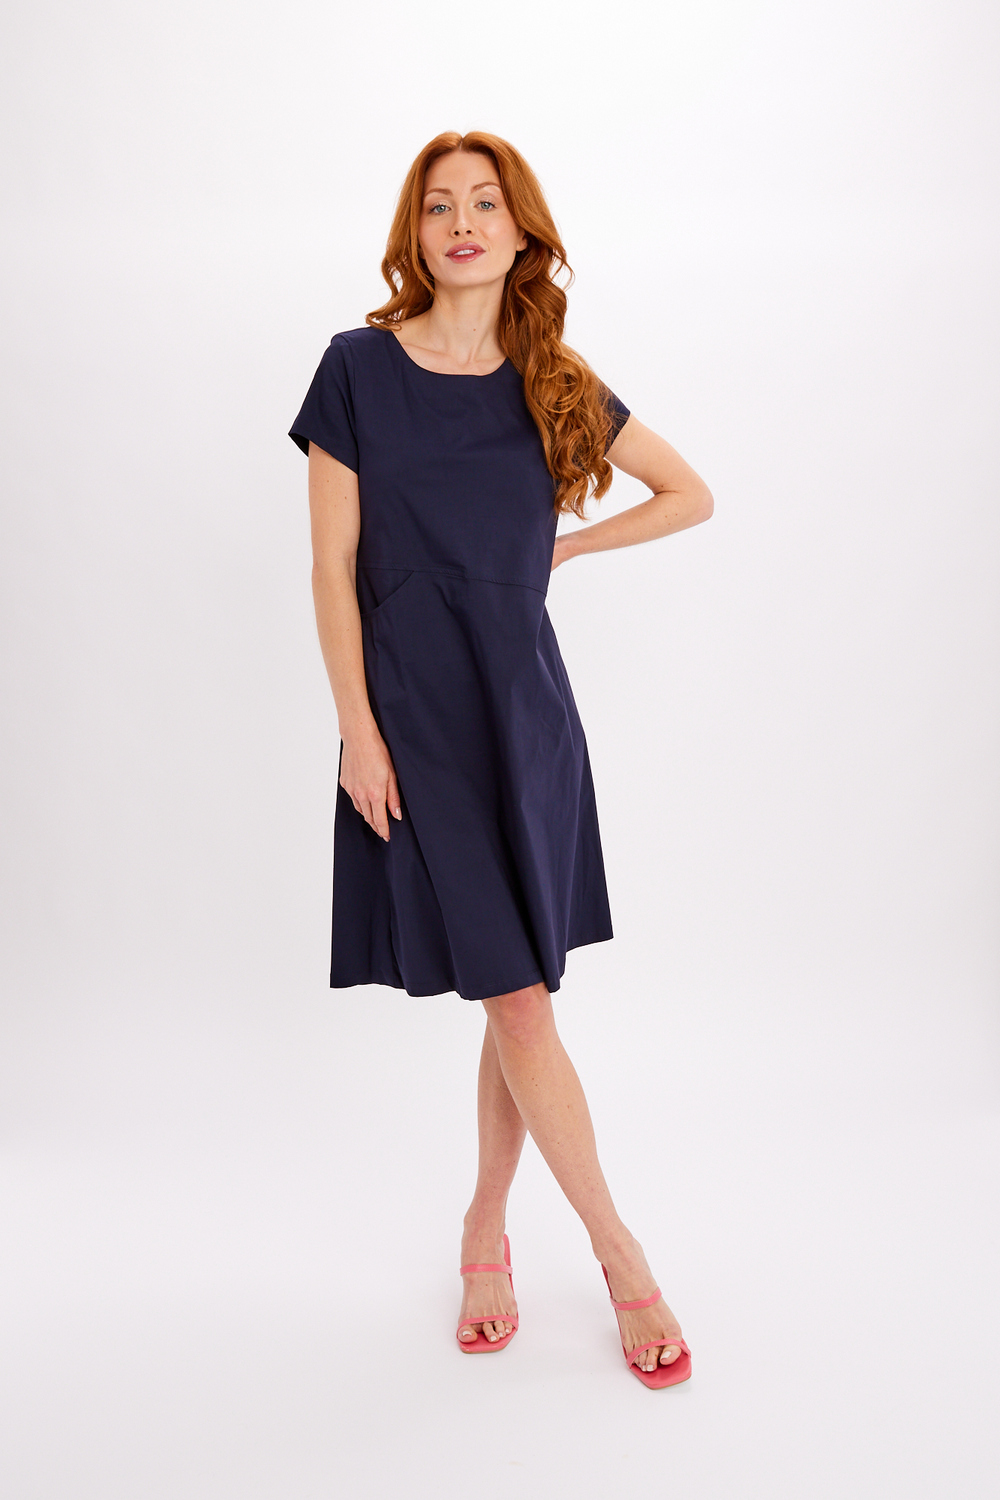 Minimalist Midi Summer Dress Style 24221-6609. Navy